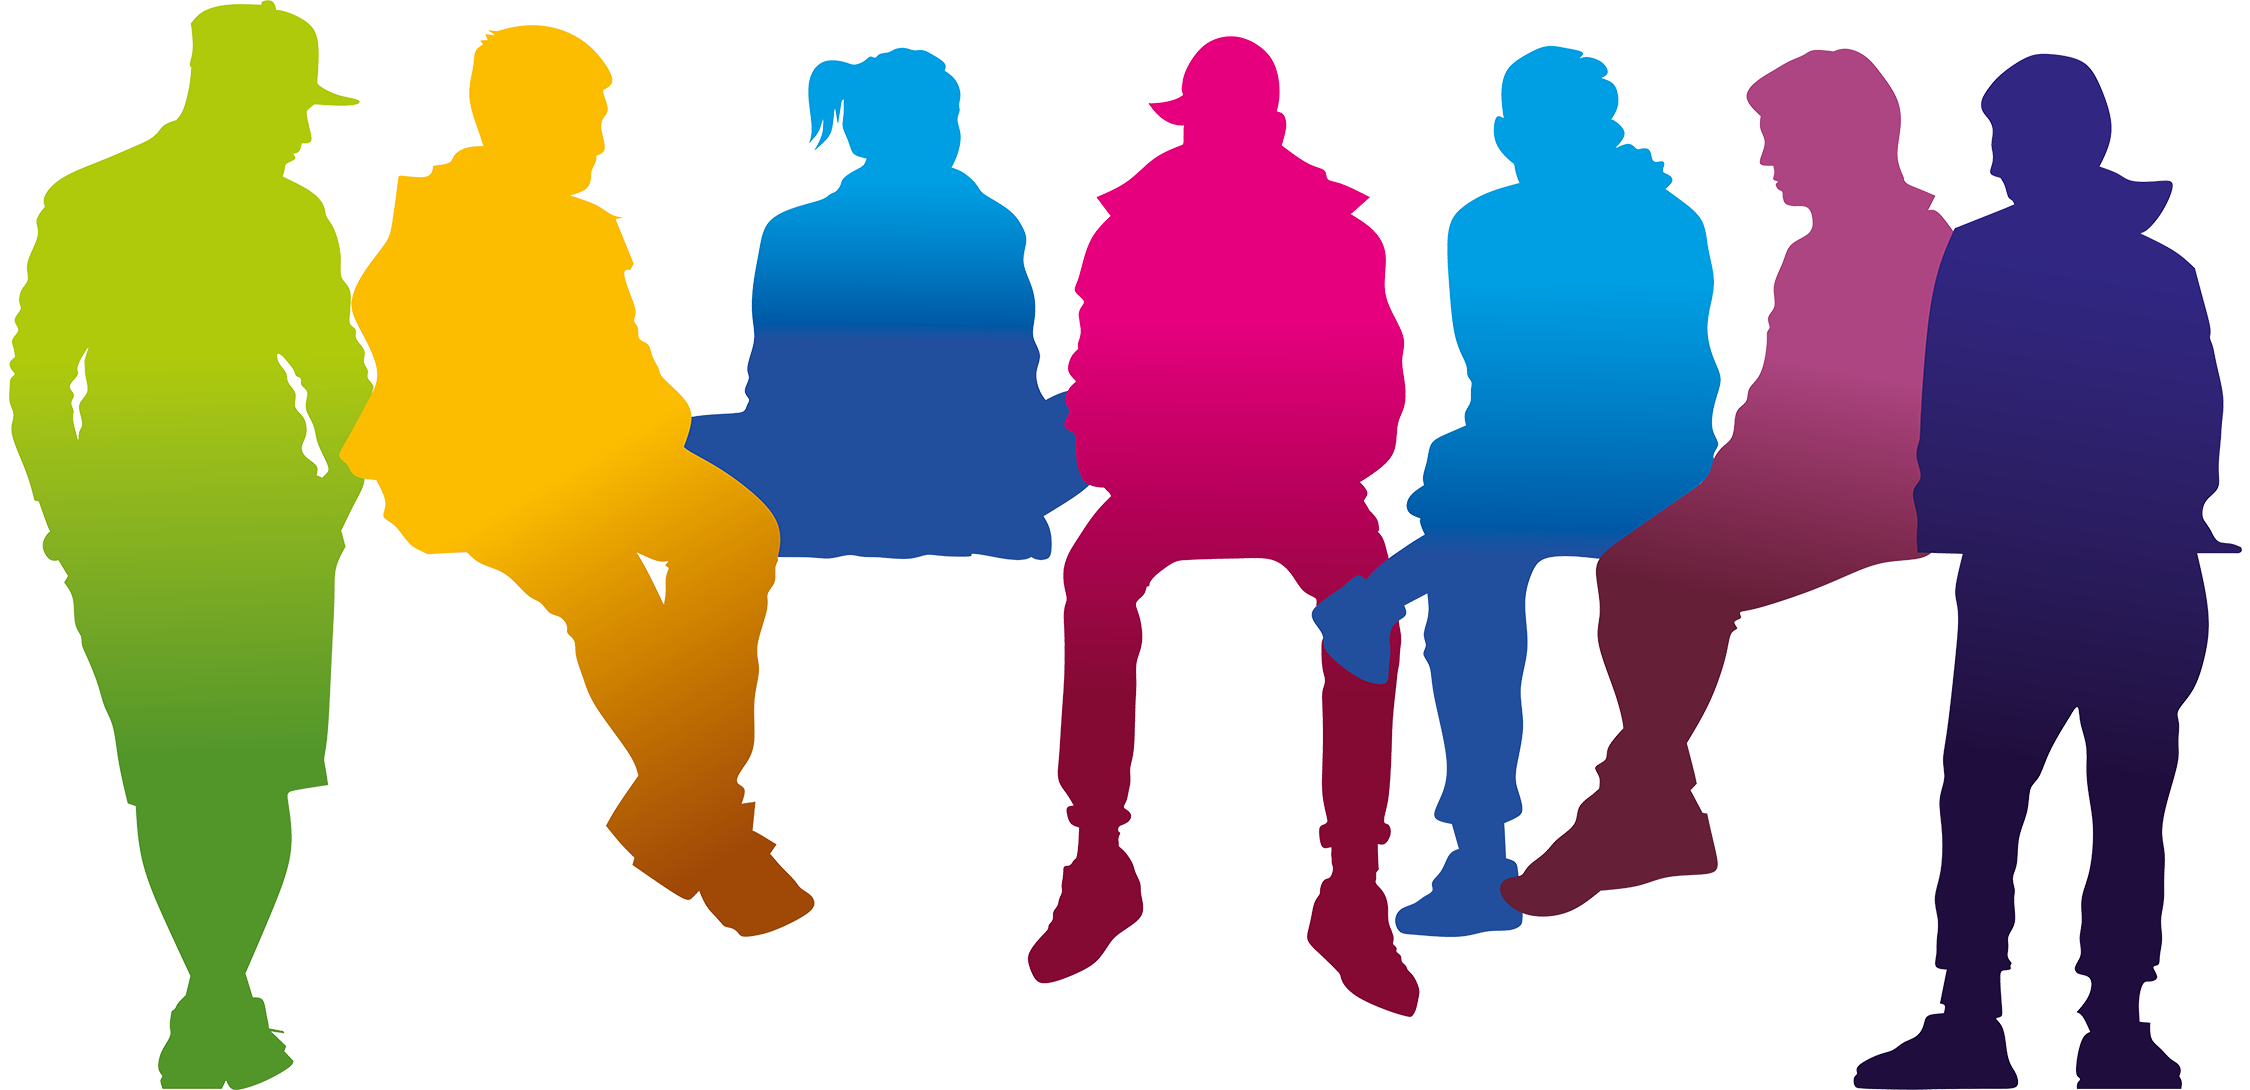 Farbige Zeichnung einer Gruppe Jugendlicher